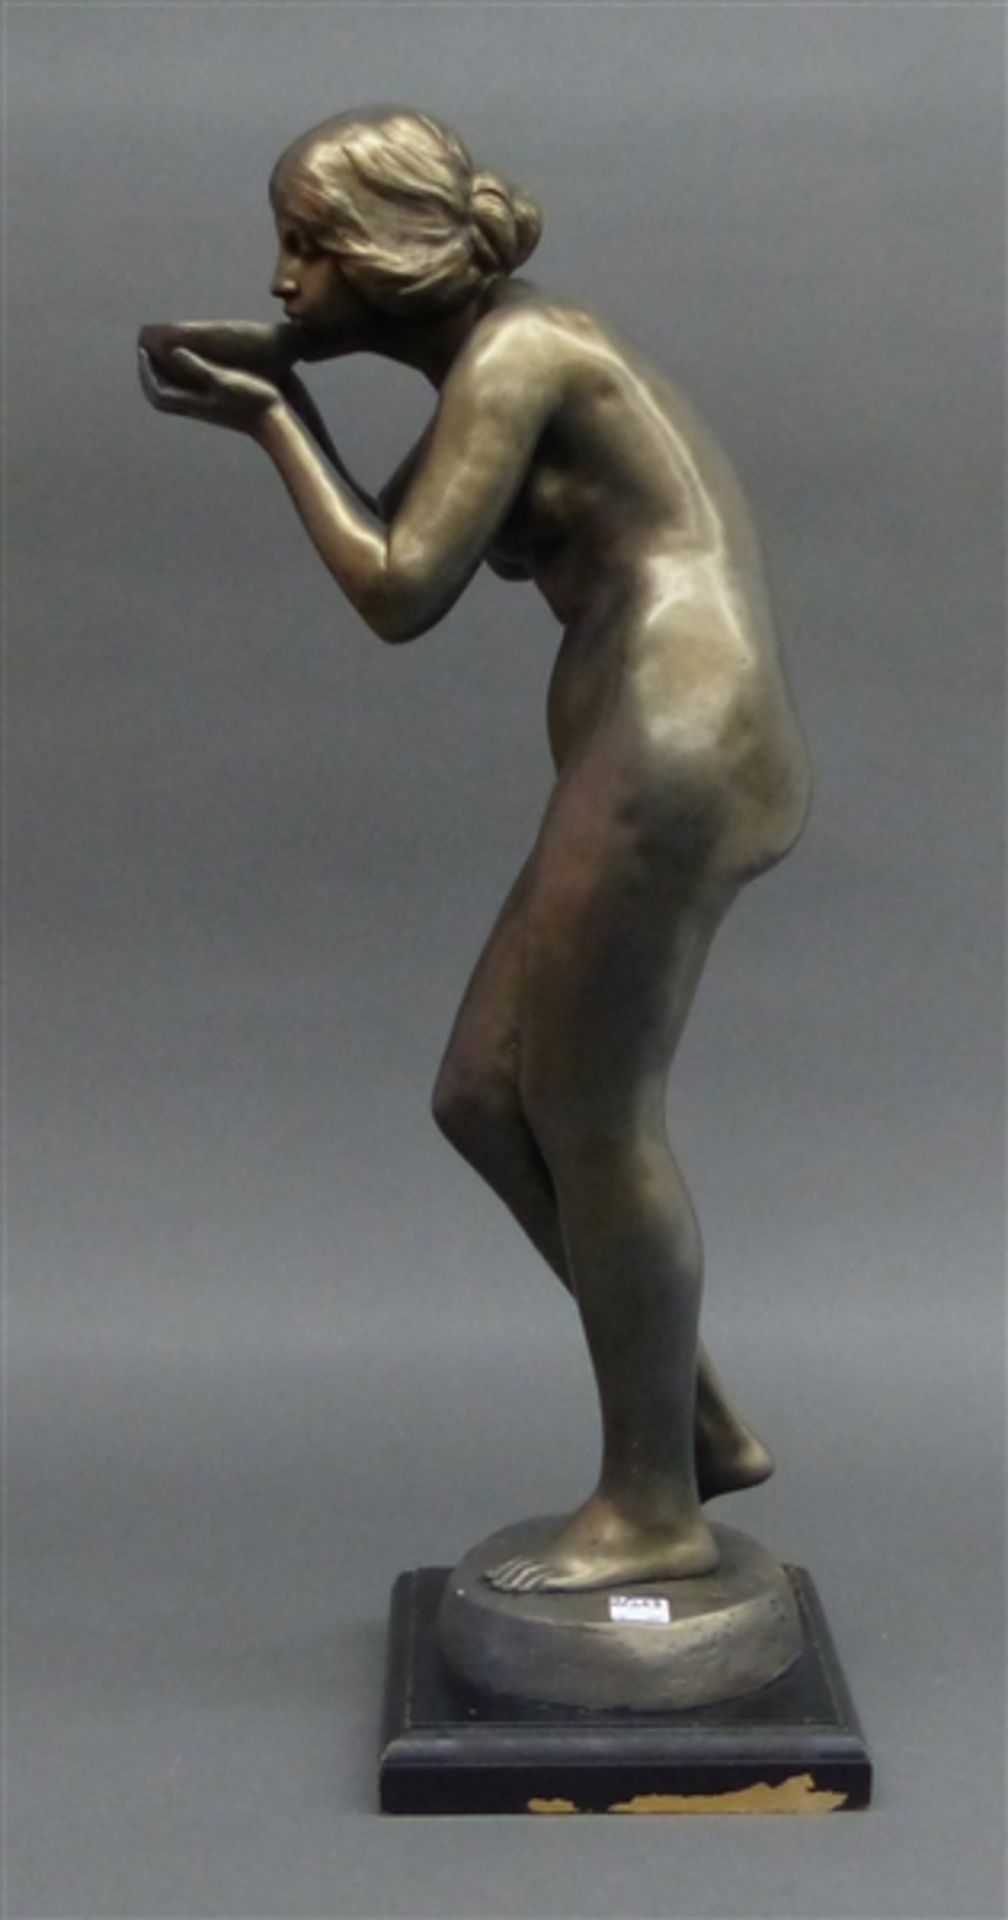 Masse-Skulptur die Trinkende, signiert, Reproduktion von 1983, auf Holzsockel, h 67 cm,